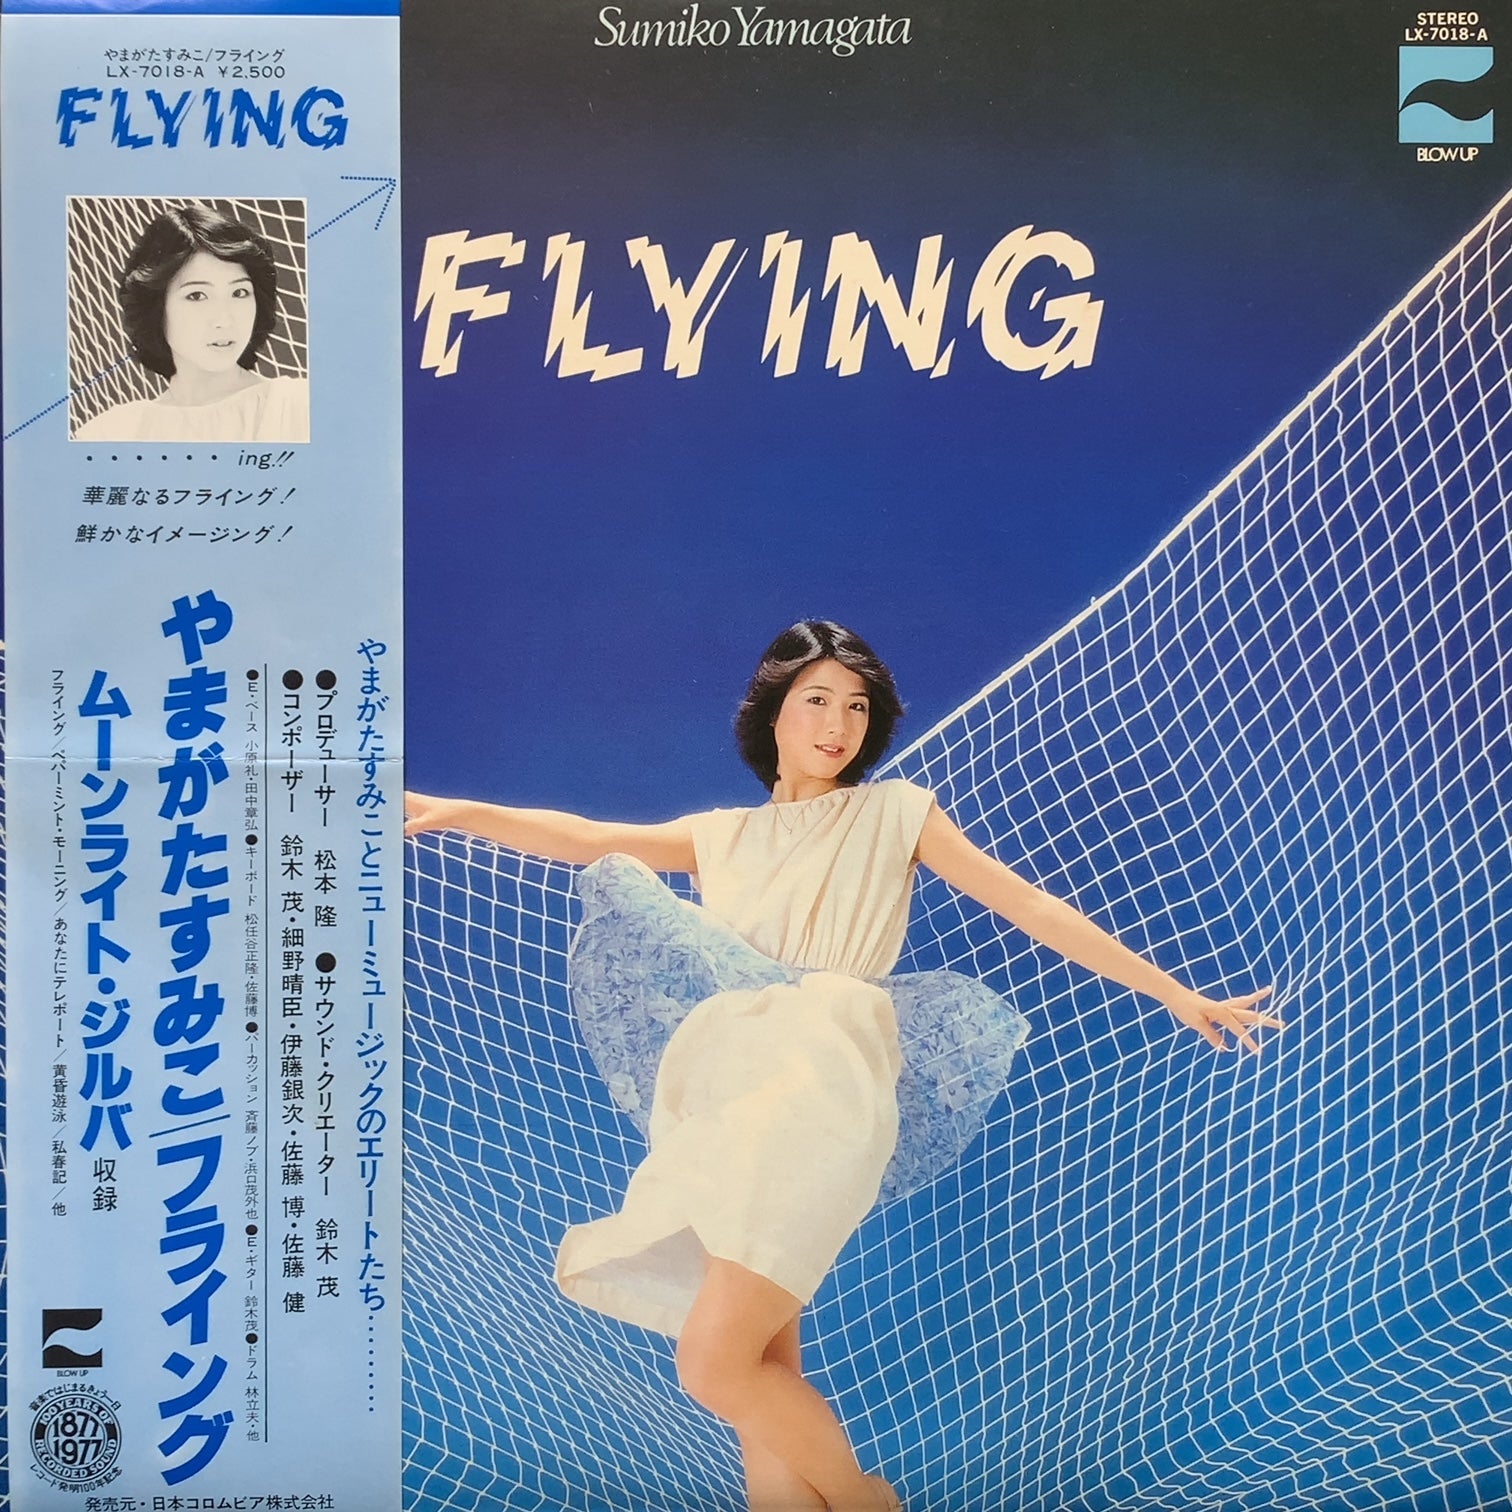 やまがたすみこ / Flying (LX-7018-A